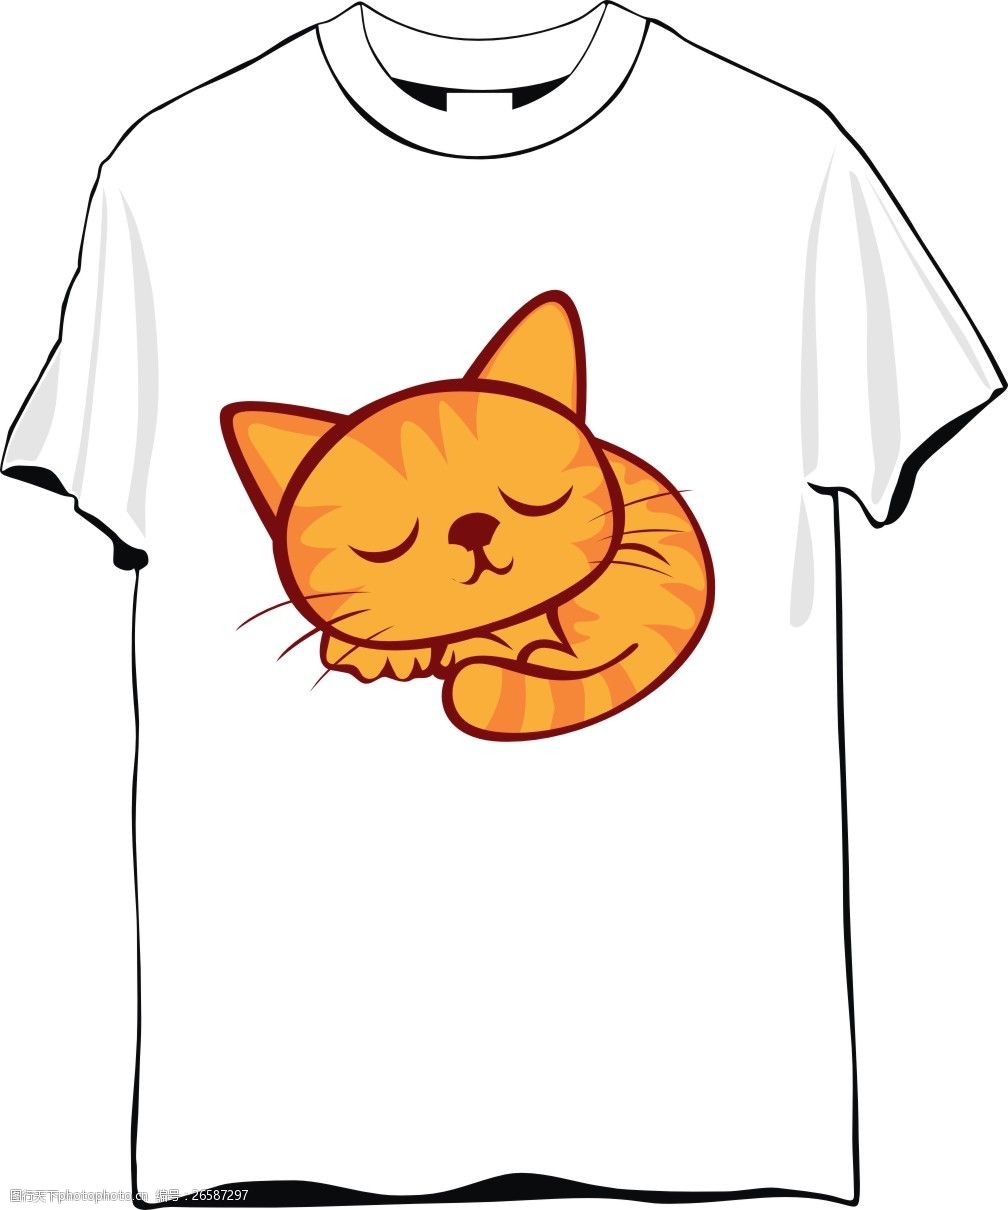 关键词:猫咪可爱t恤 动物图案t恤 可爱t恤 白色 涂鸦 手绘 彩色 卡通